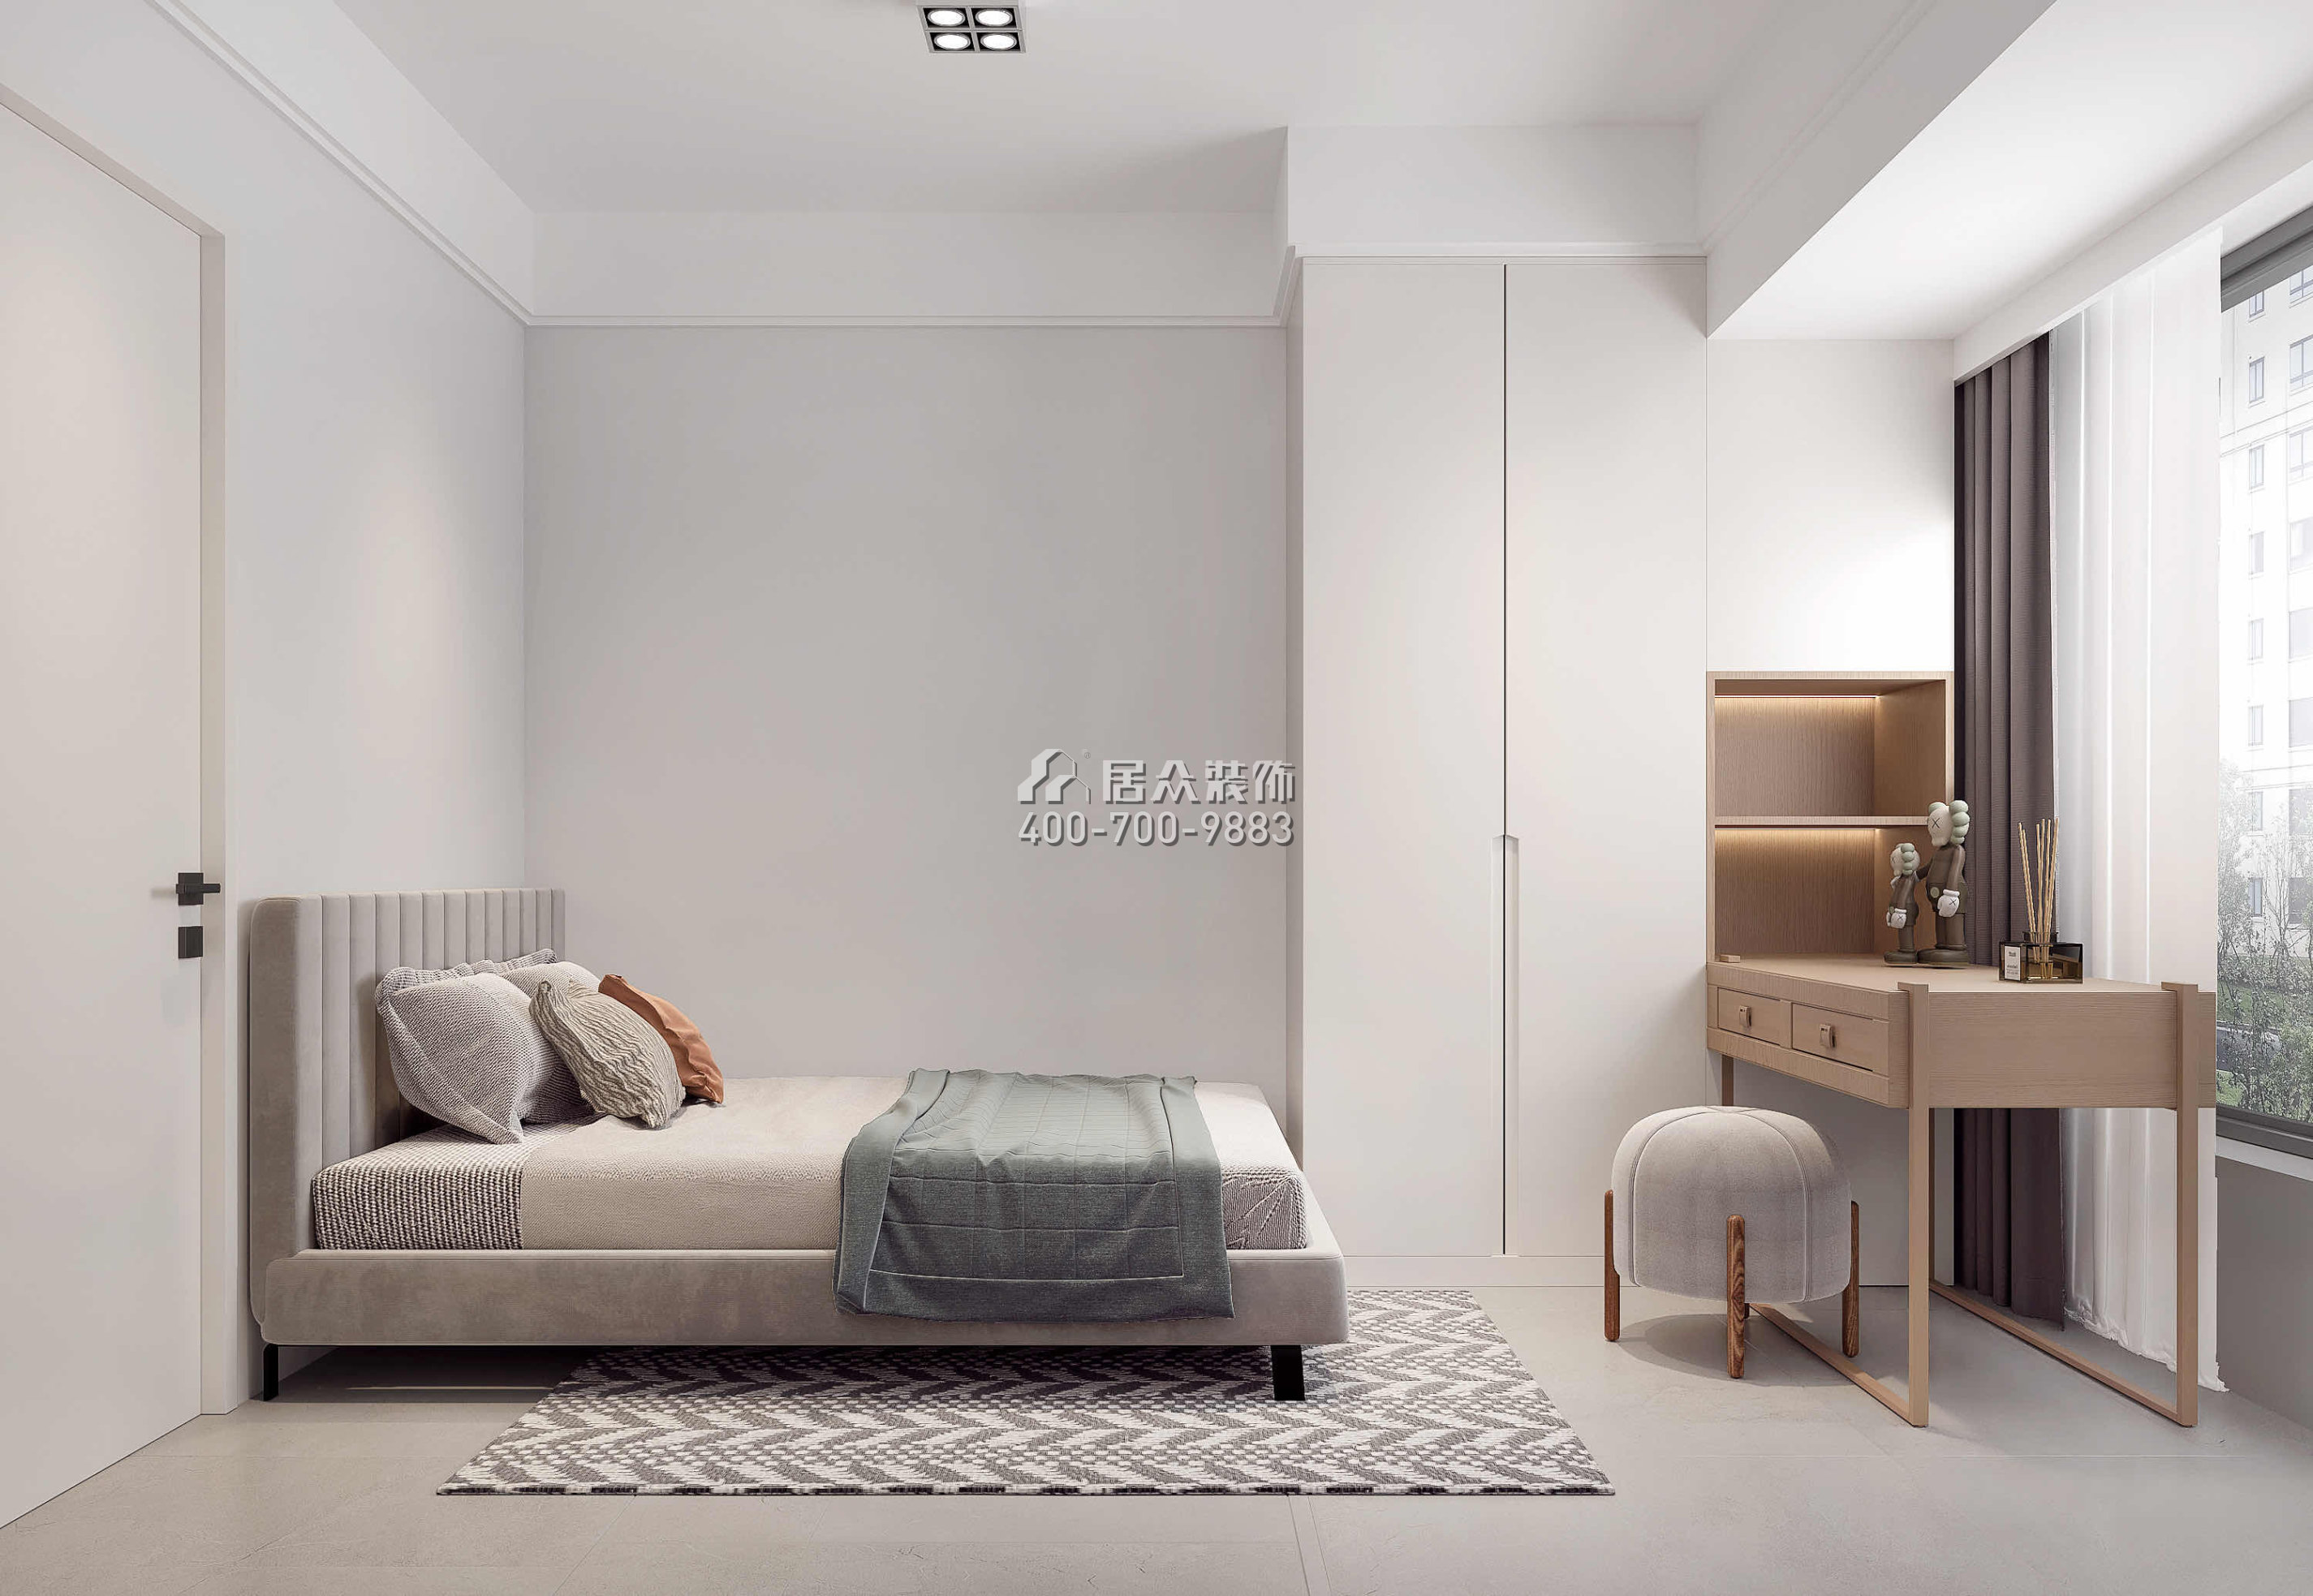 新錦安海納公館89平方米現代簡約風格平層戶型臥室裝修效果圖